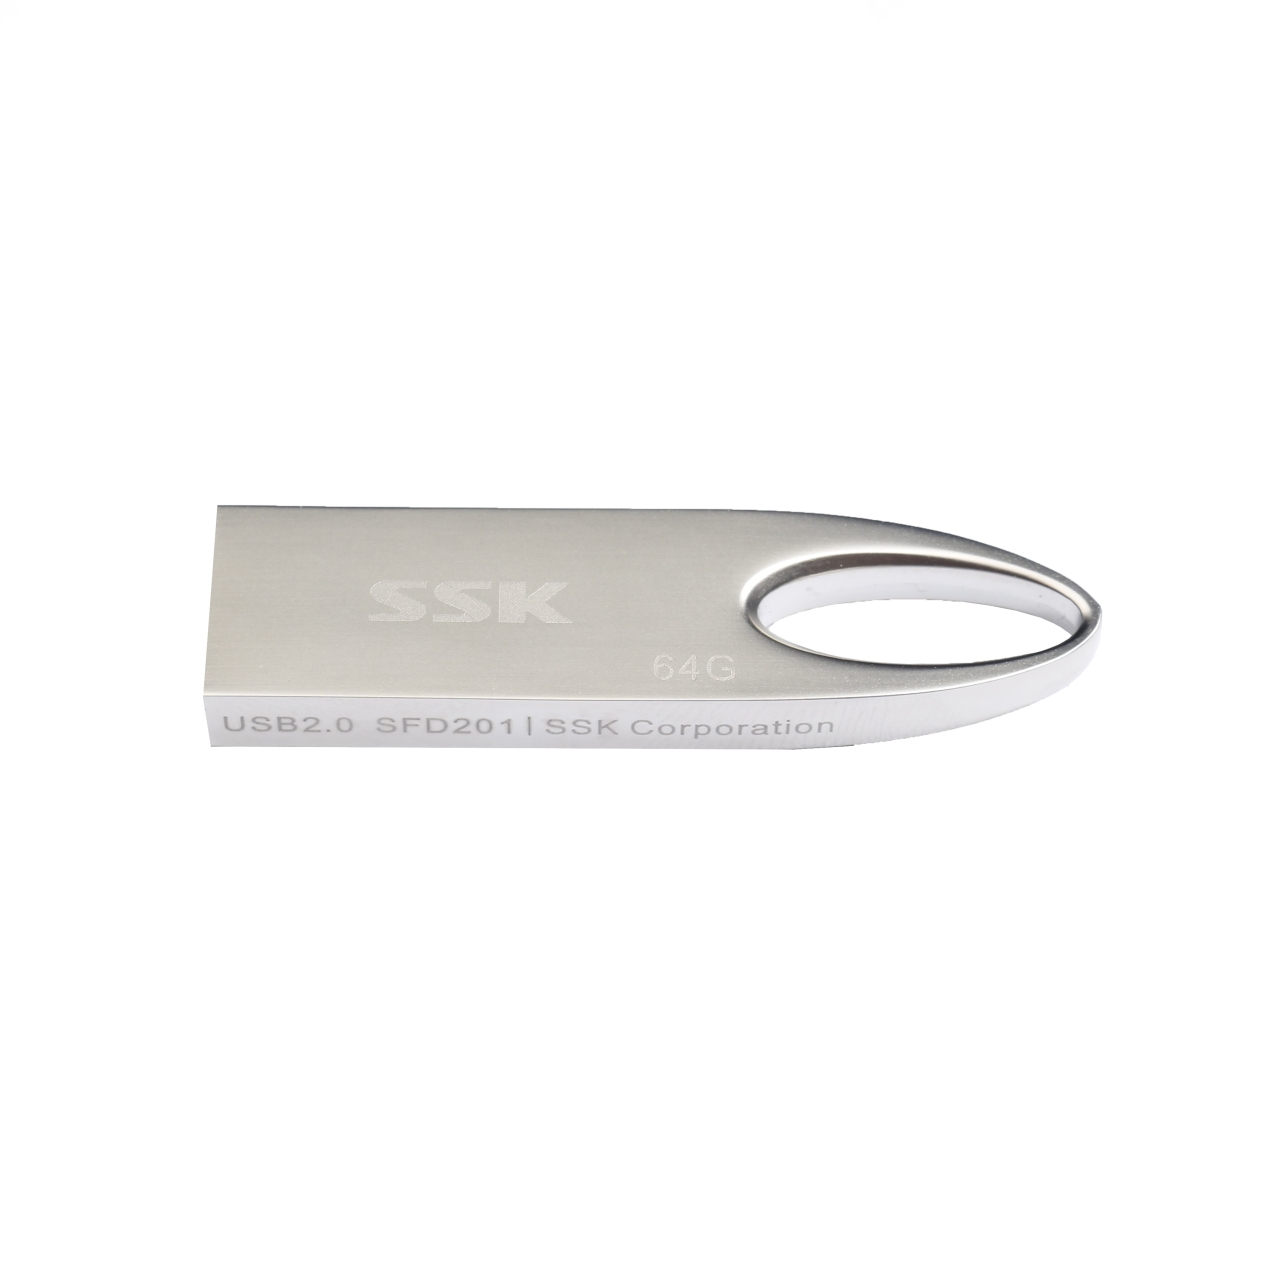 فلش مموری USB 2.0 اس اس کا مدل SFD201 ظرفیت 64 گیگابایت